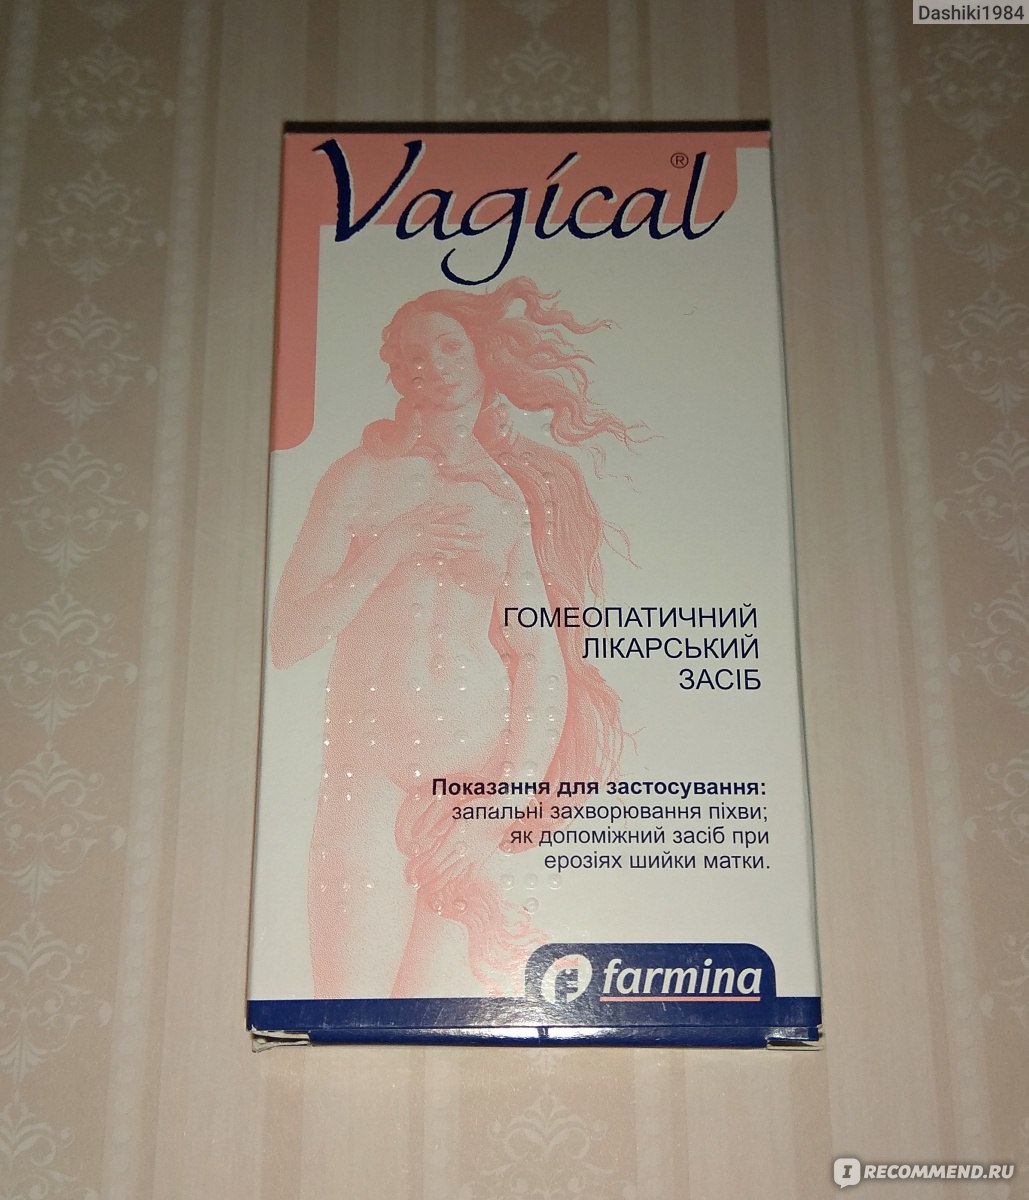 Противовоспалительные вагинальные свечи в гинекологии: обзор препаратов